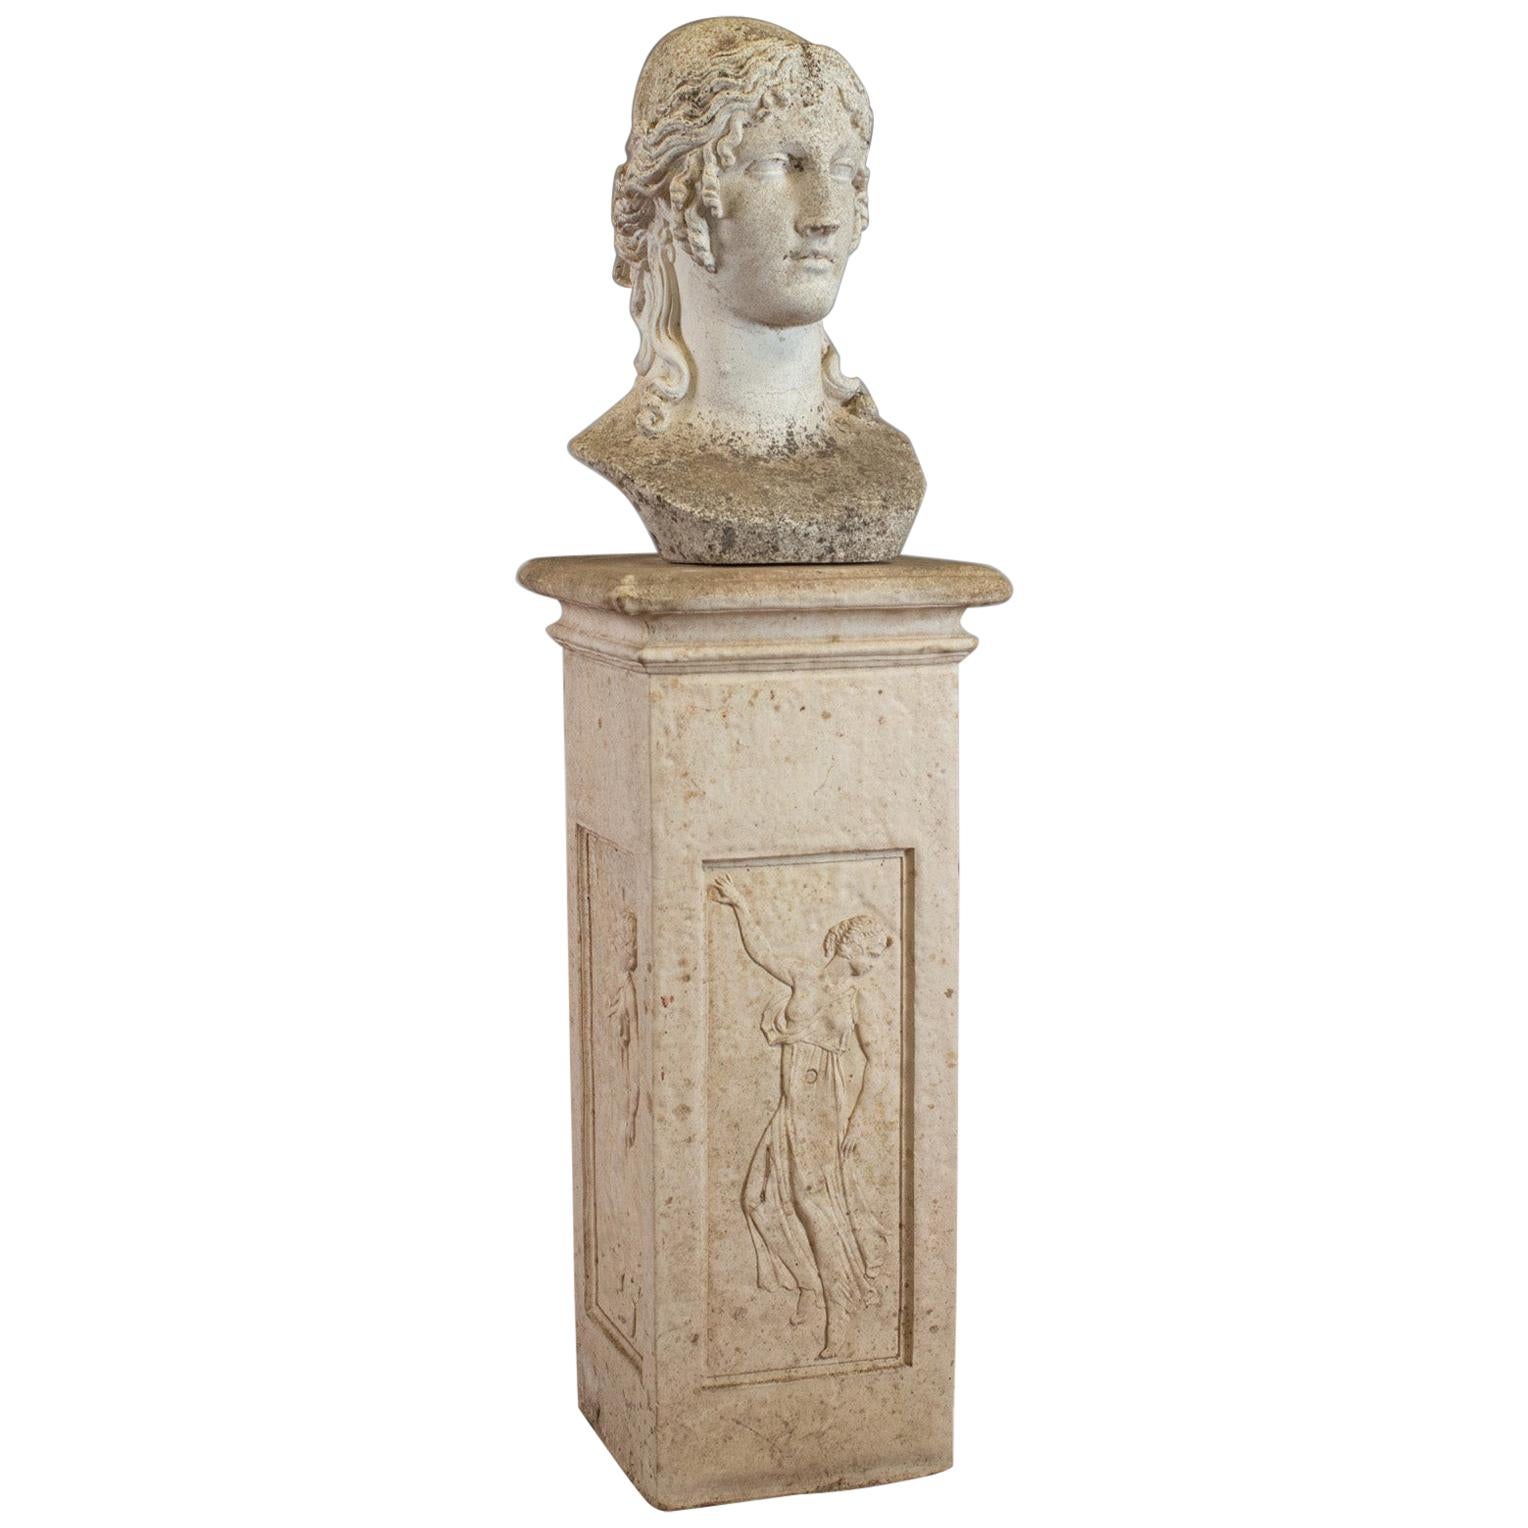 Antique Bust on Podium, Garden, Italian, Classical, Female Pose, circa 1910